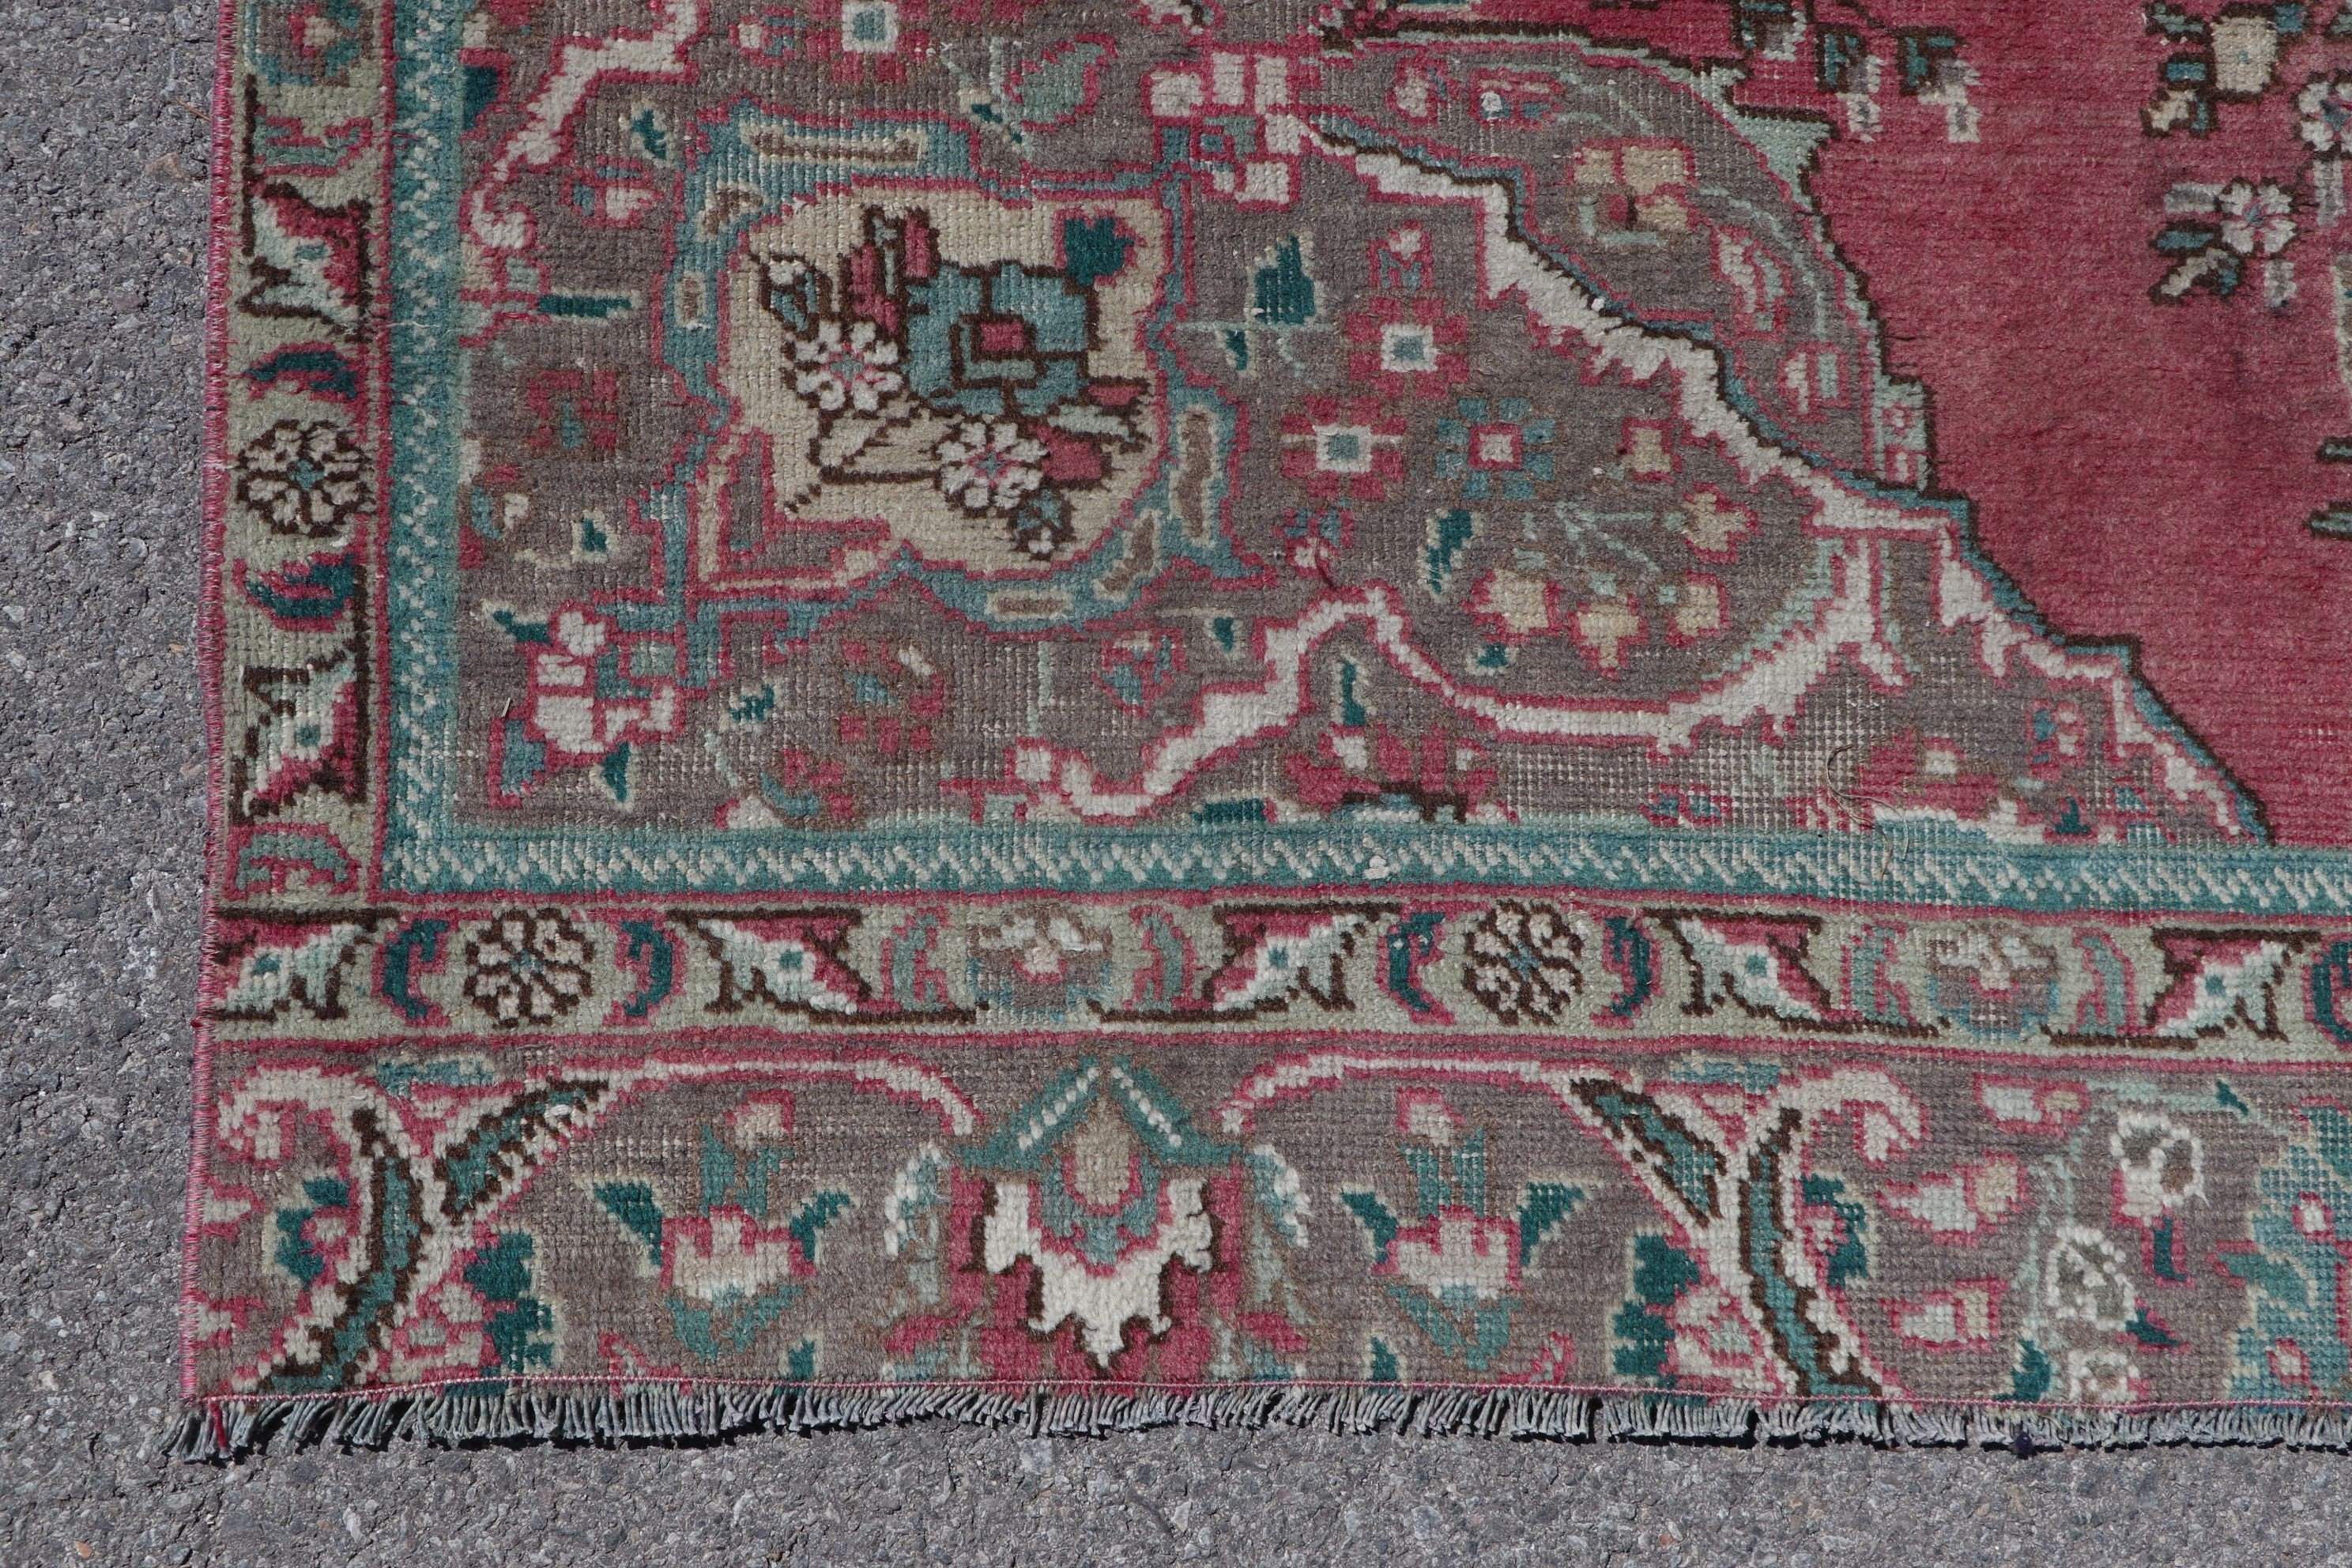 Antique Rugs, Bedroom Rug, Vintage Rug, Salon Rugs, 5.1x8.3 ft Large Rug, Tribal Rugs, Turkish Rug, Pink Oriental Rugs